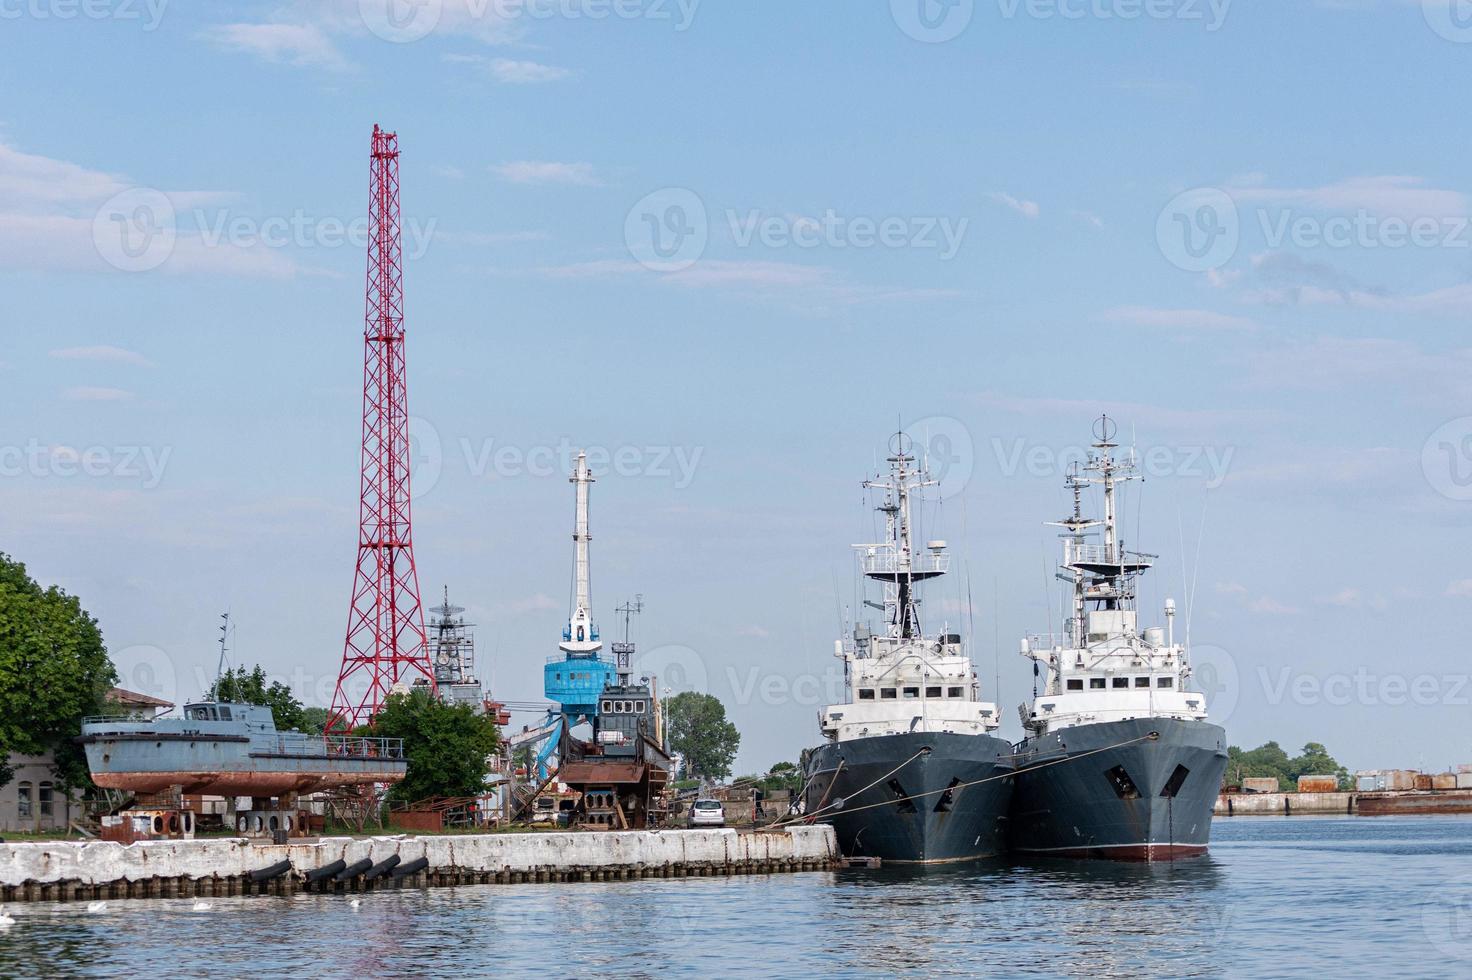 grands navires de la marine de fer dans le chantier naval pour réparation. grande grue dans l'arsenal. port de la mer bleue. mouillage des navires photo